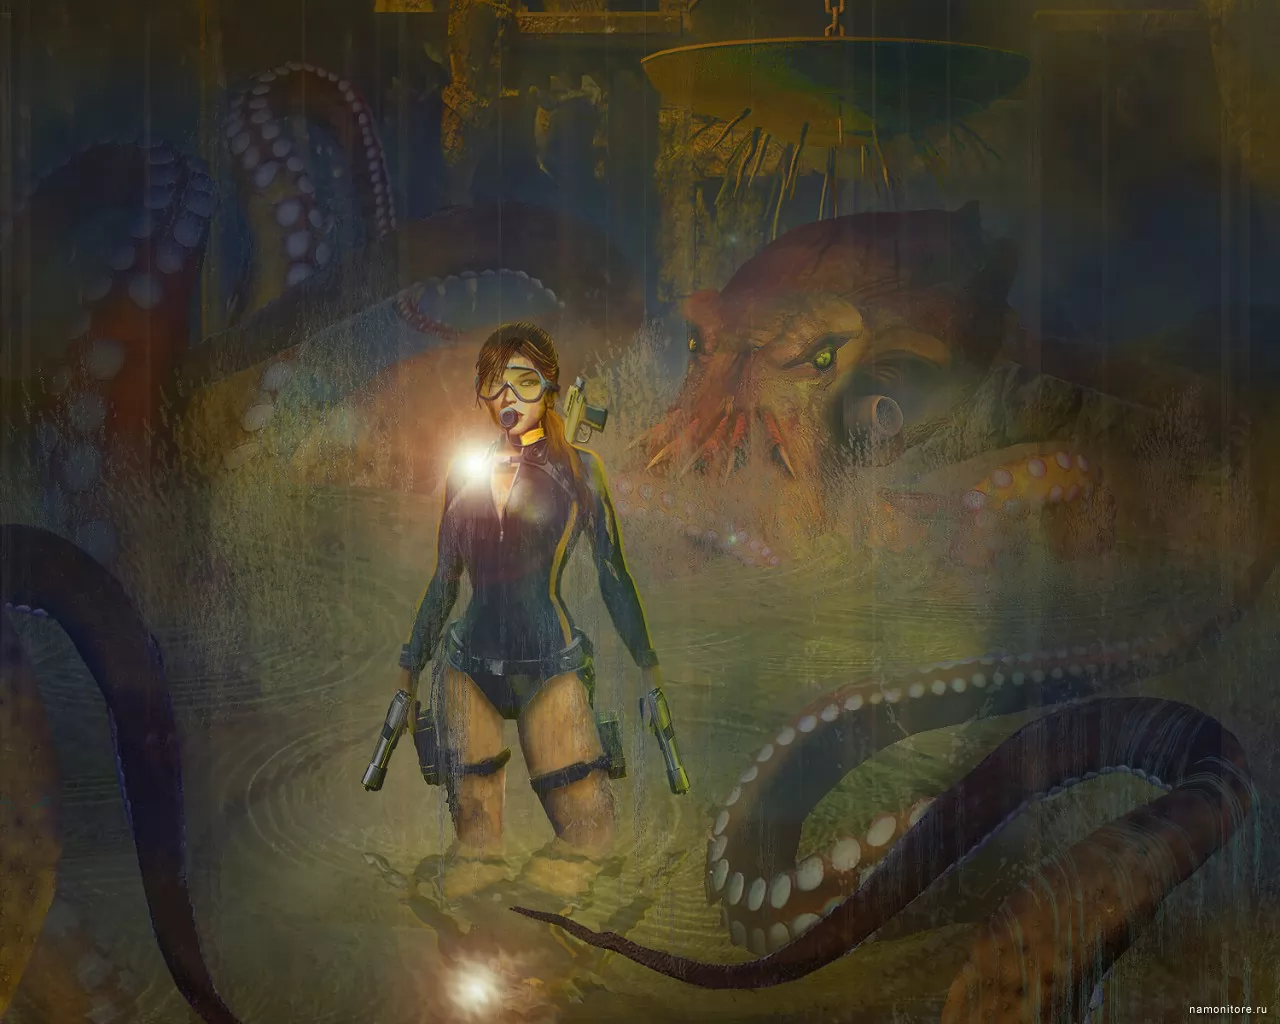 Tomb Raider: Underworld, ,  ,  